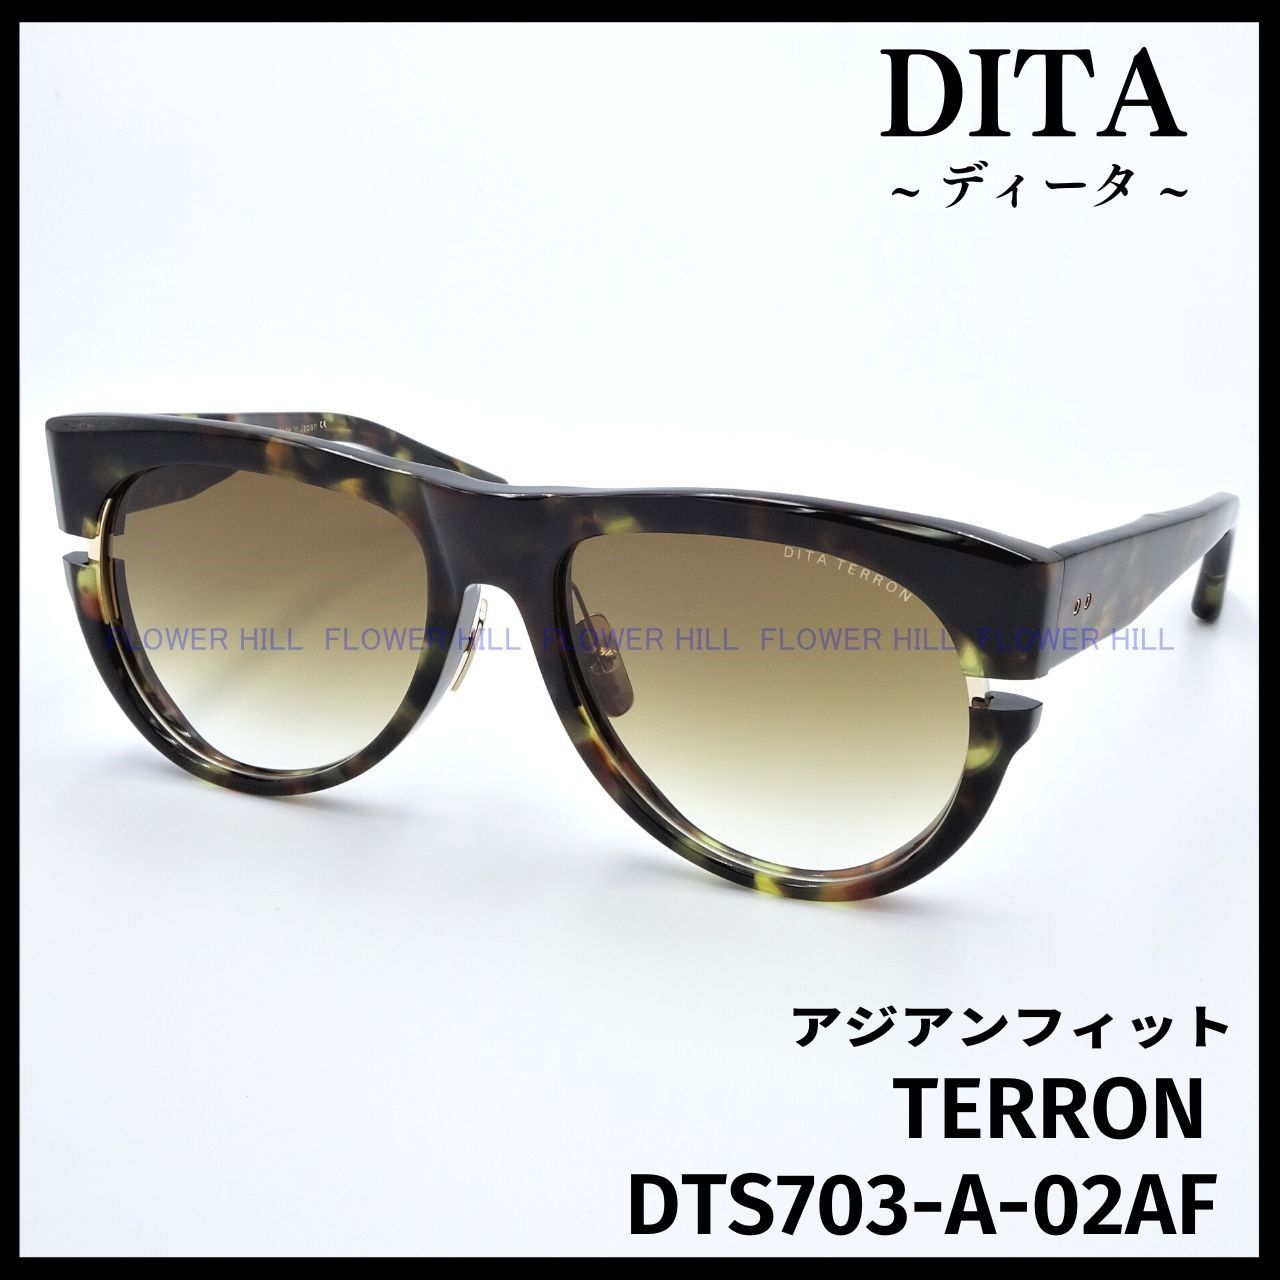 DITA ディータ サングラス TERRON DTS703-A-02AF ハバナ/ゴールド